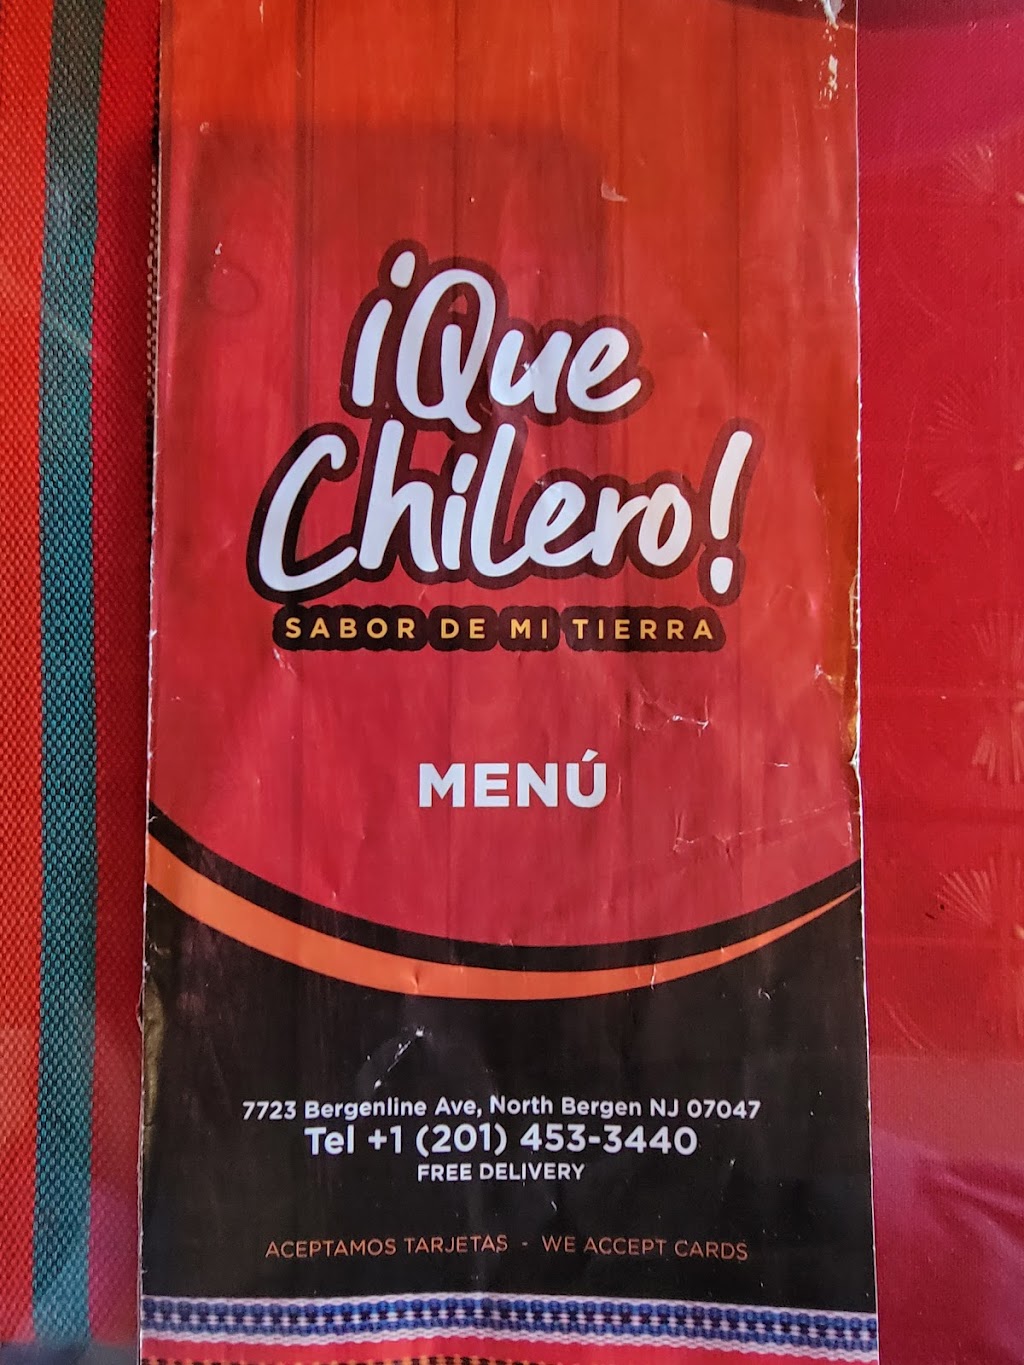 Que Chilero ! Los shucos! | restaurant | 7723 Bergenline Ave, North Bergen, NJ 07047, USA | 2014533440 OR +1 201-453-3440